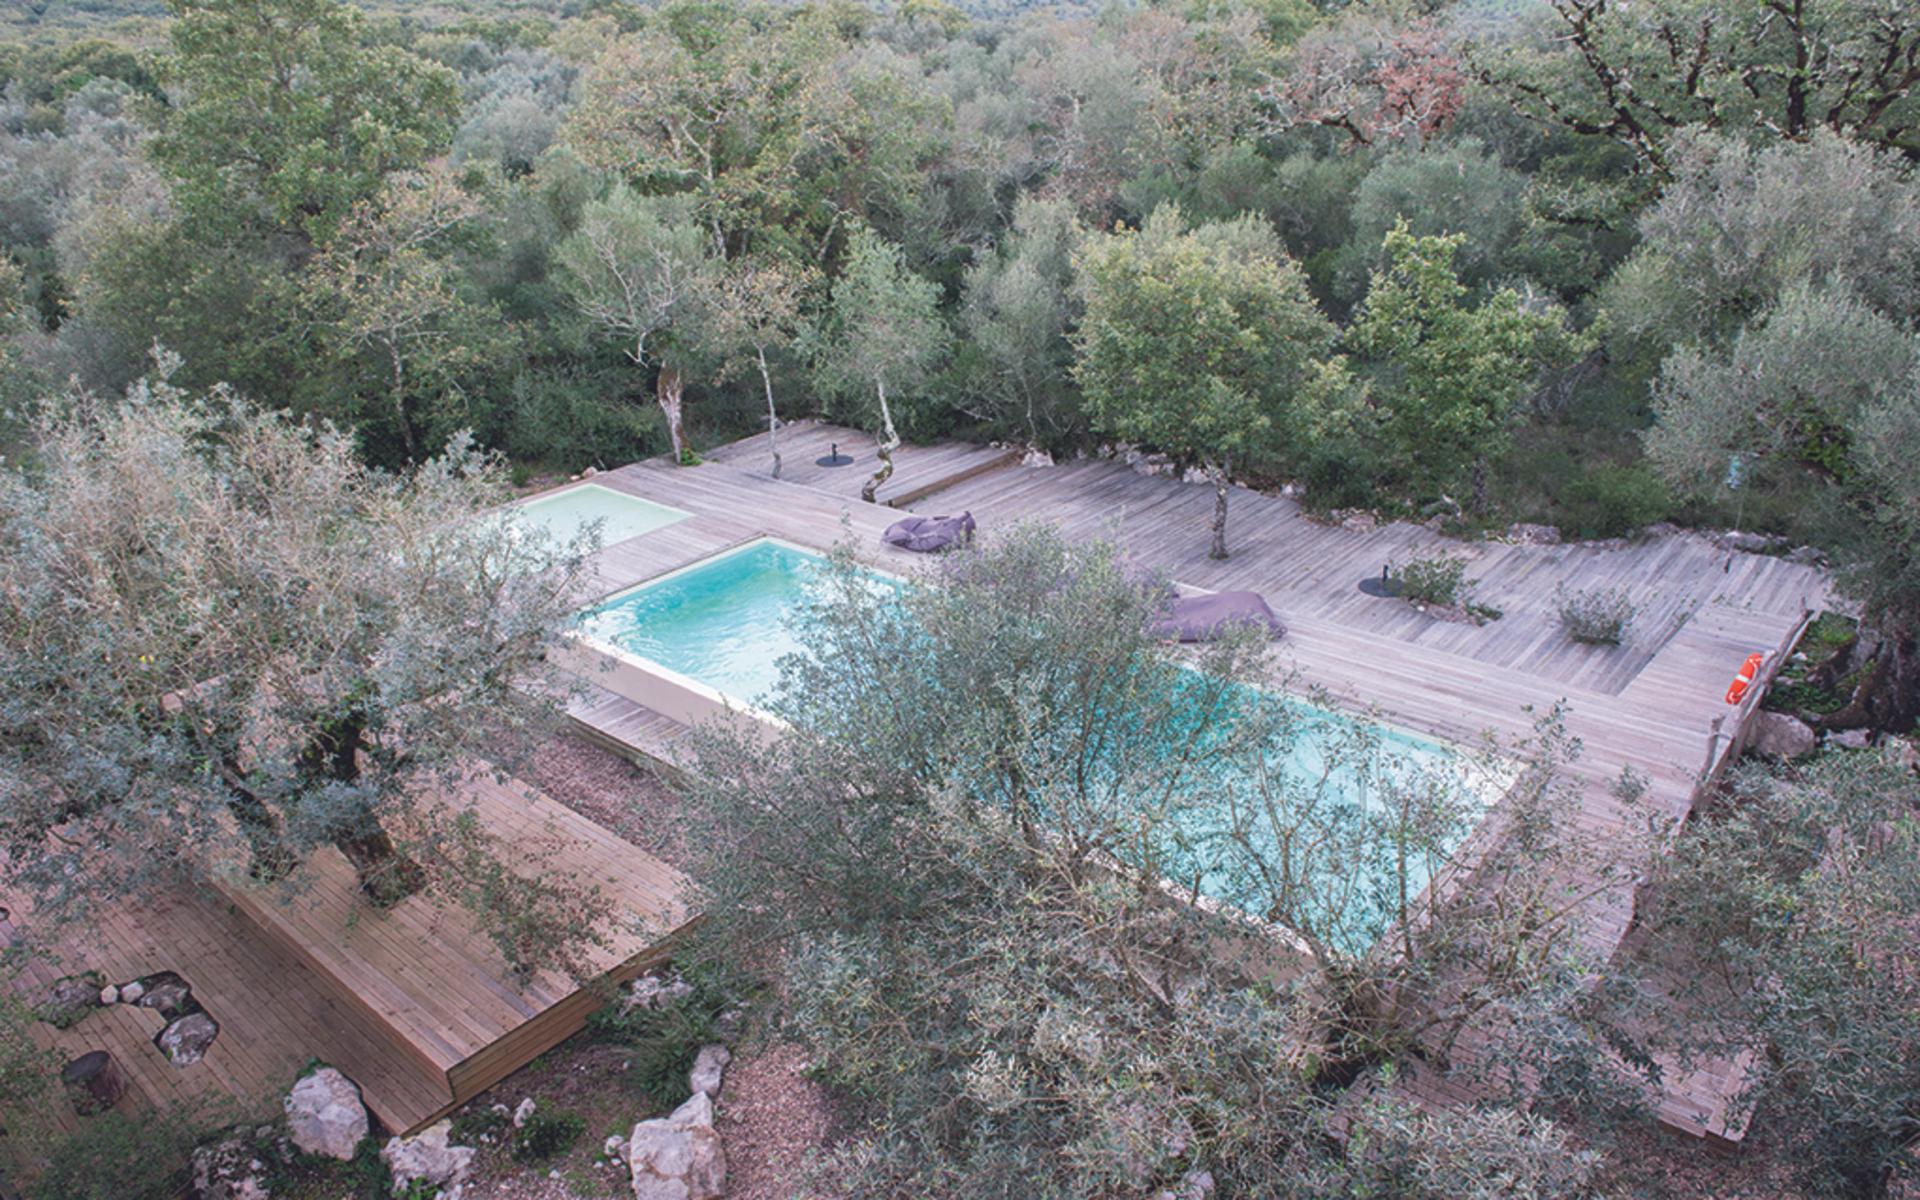 STRÅLANDE UTSIKTER. Från takterrassen på Villa Pedra blickar du ut över bergen i fjärran, vackra lövträd och poolen med sitt perfekt turkosa vatten.